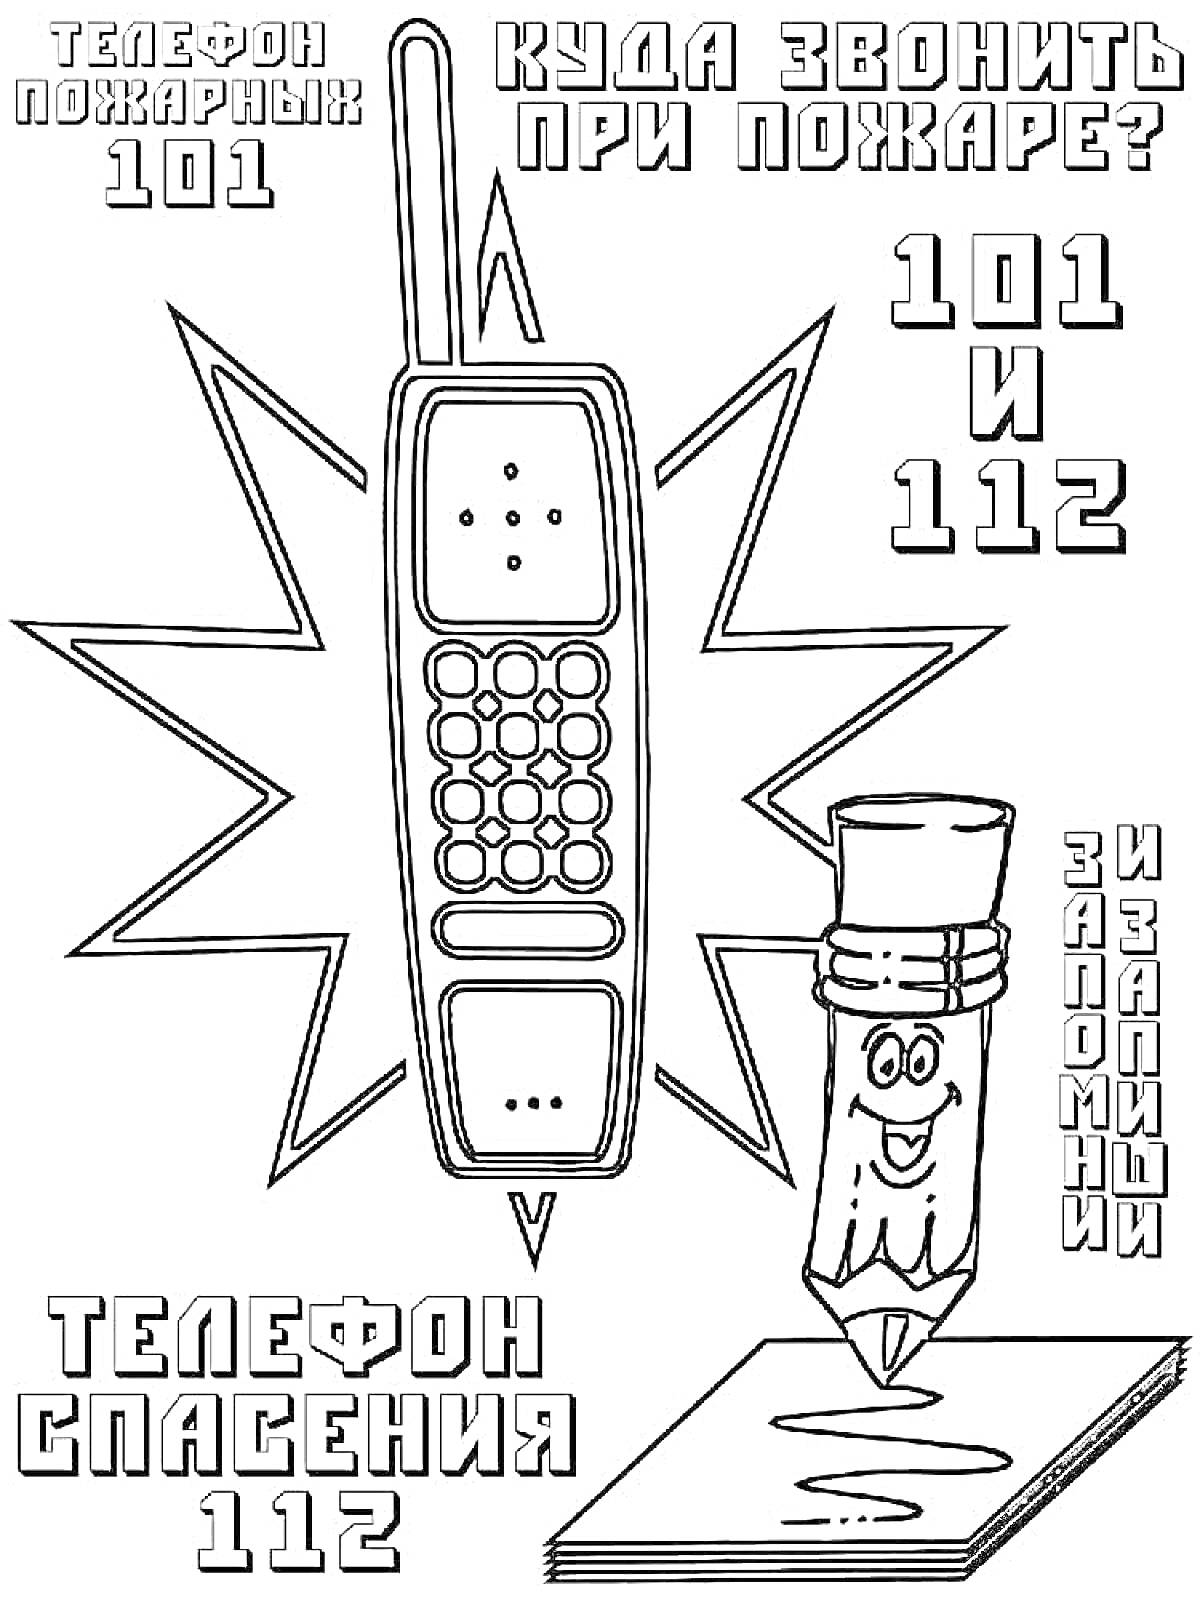 Раскраска с изображением телефона, карандаша с улыбающимся лицом, номера телефонов пожарной службы (101) и службы спасения (112)